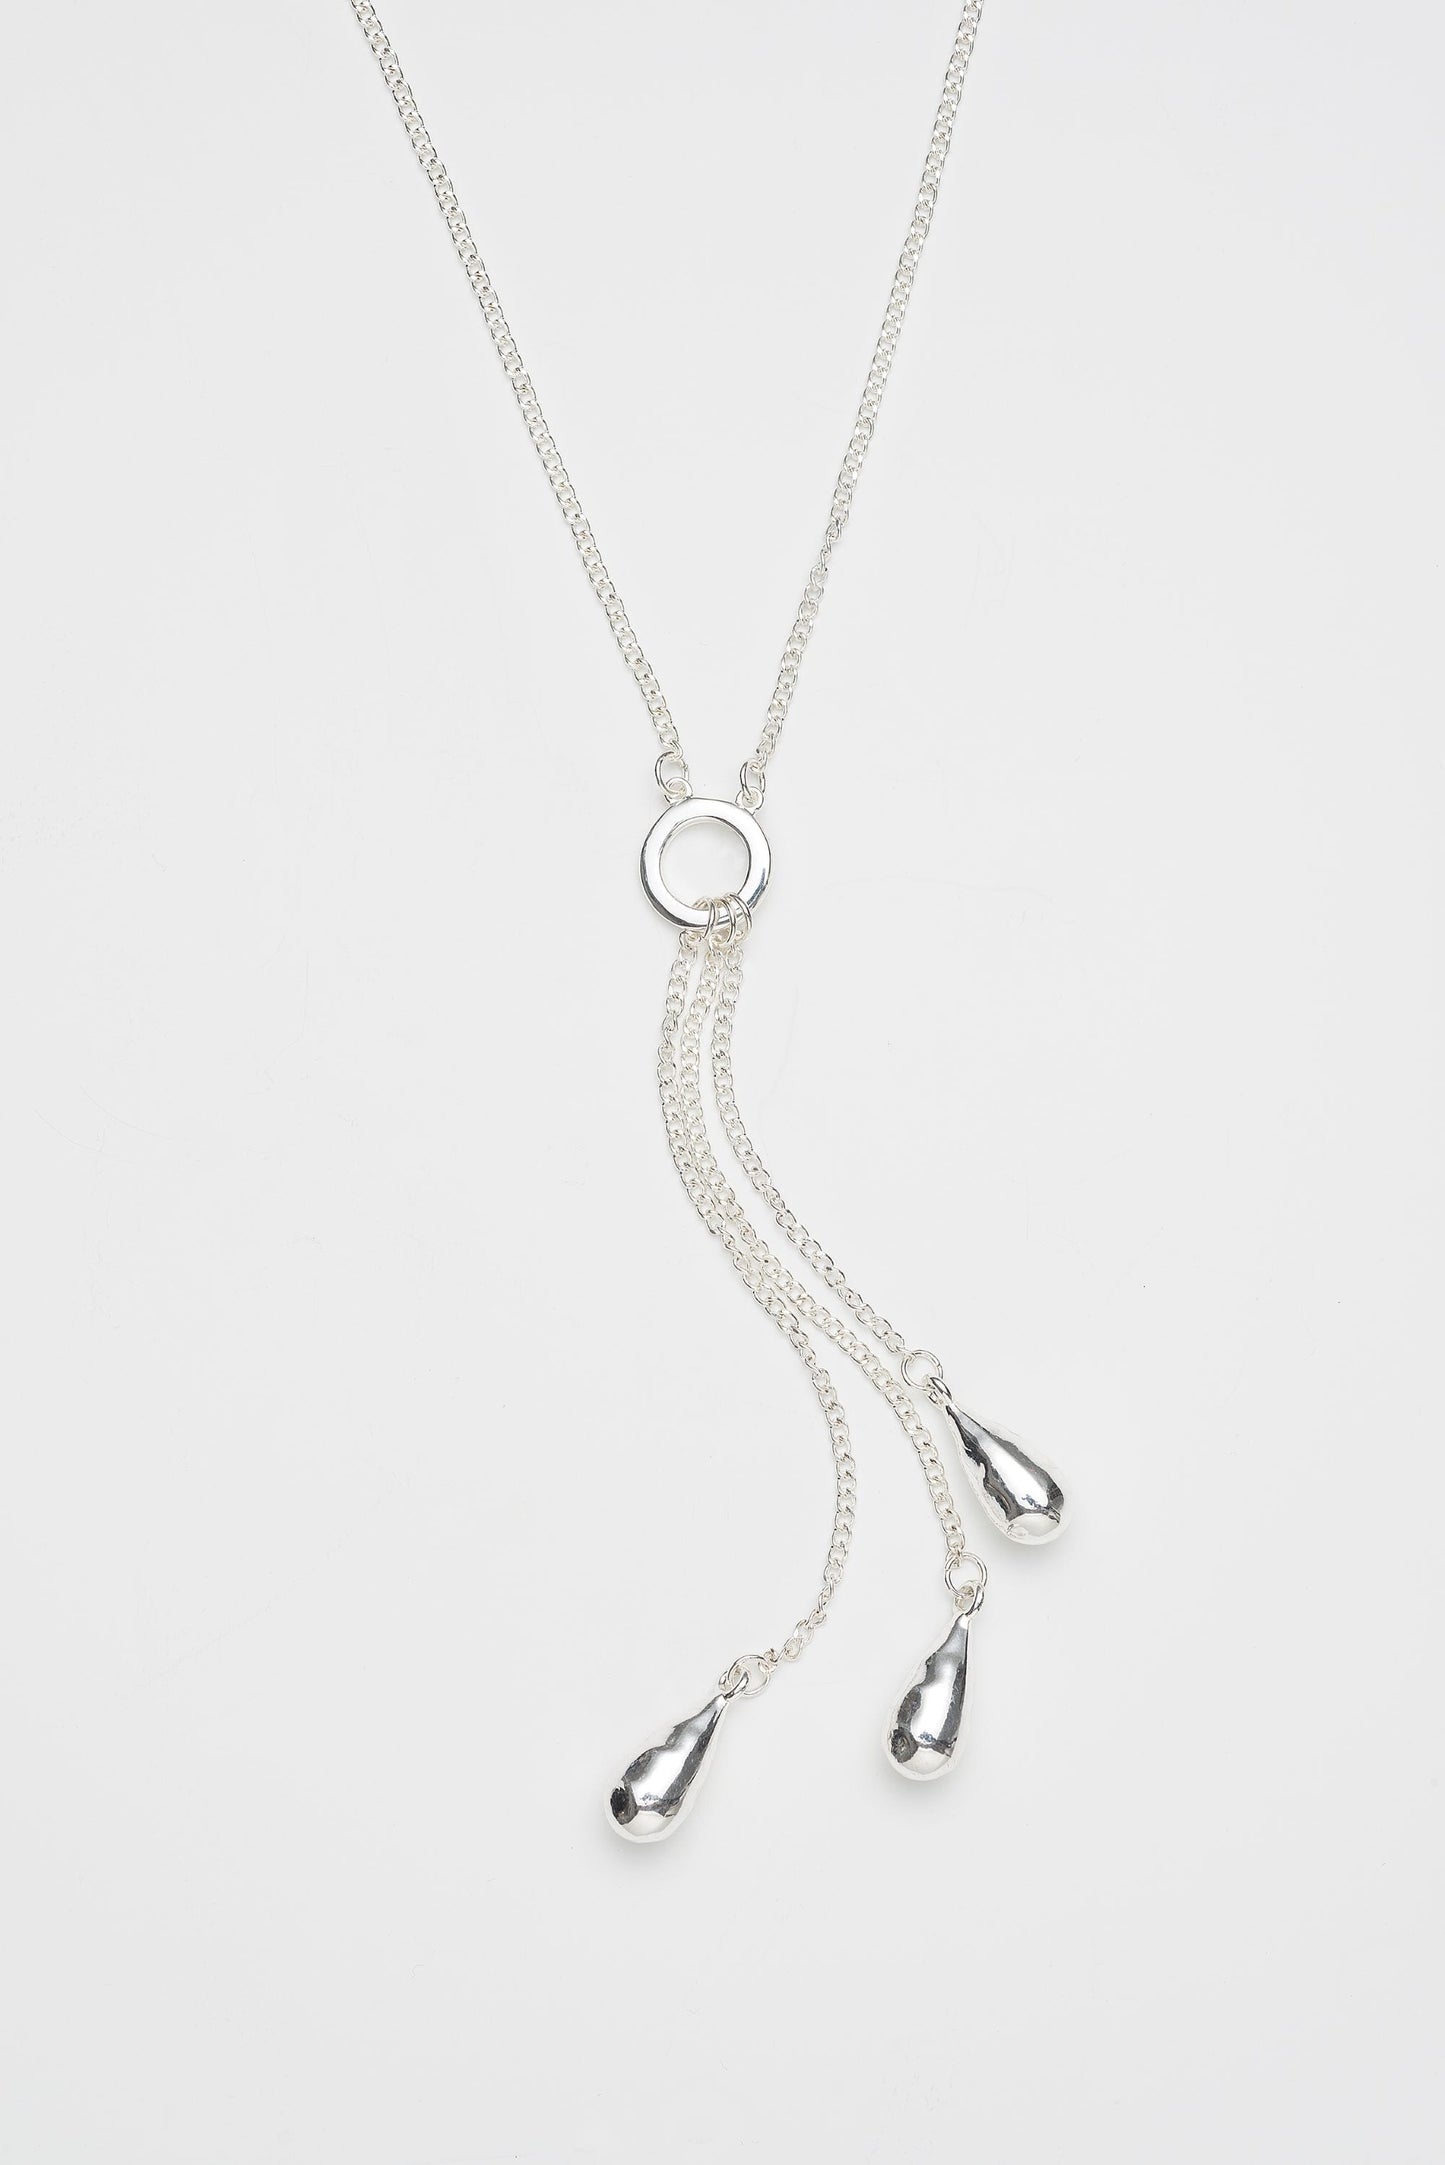 Alba Silver Necklace